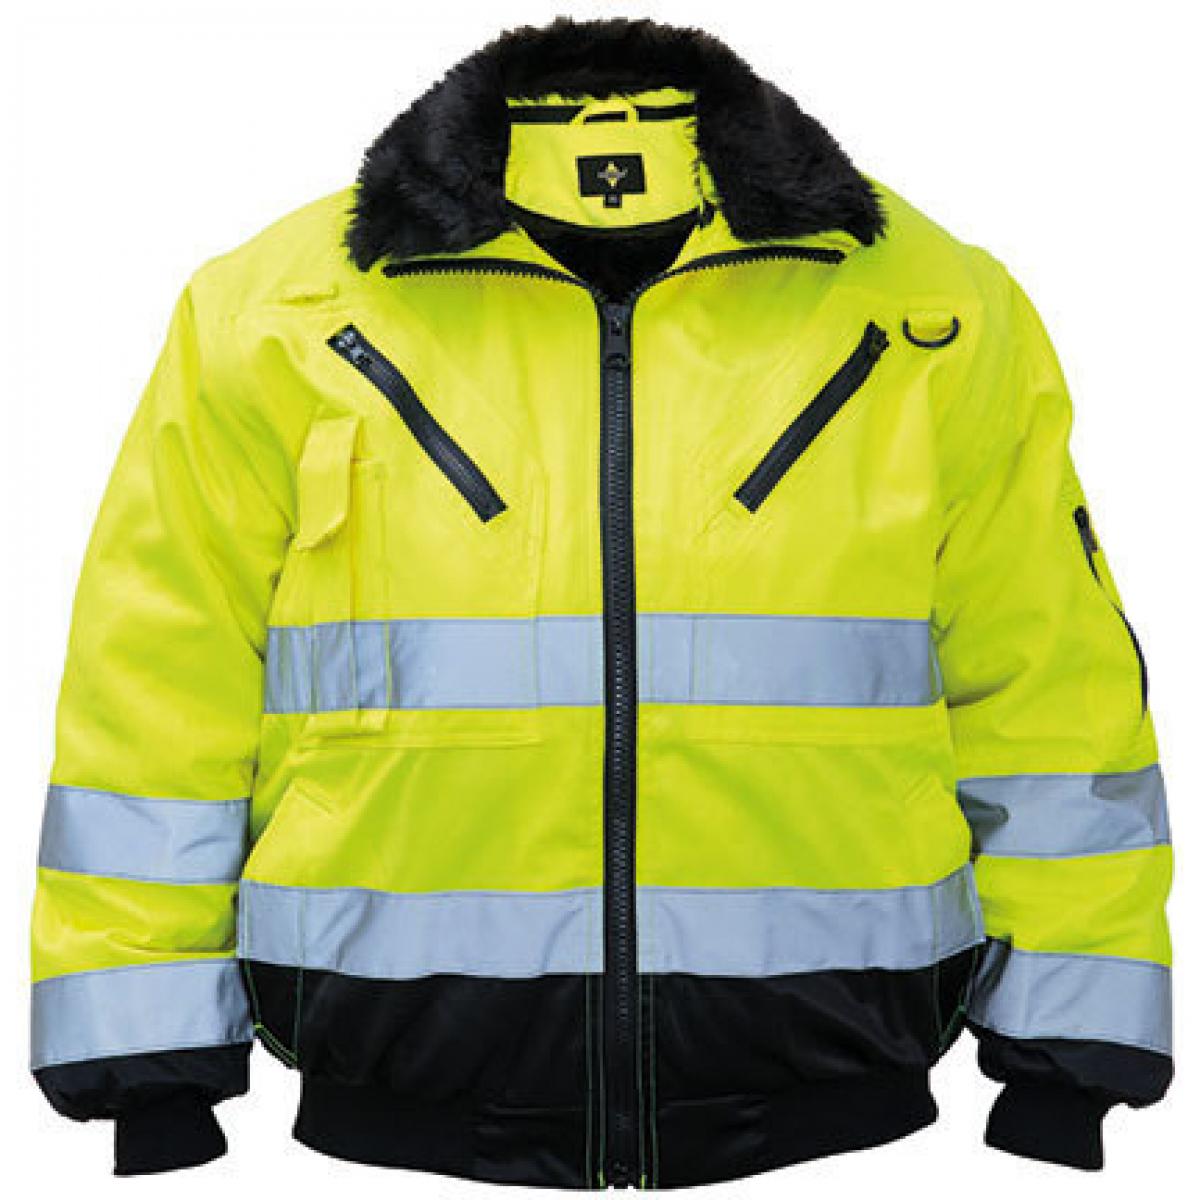 Hersteller: Korntex Herstellernummer: KXPJ Artikelbezeichnung: Pilot Jacket, Vier-in-eins Pilotenjacke Farbe: Signal Yellow